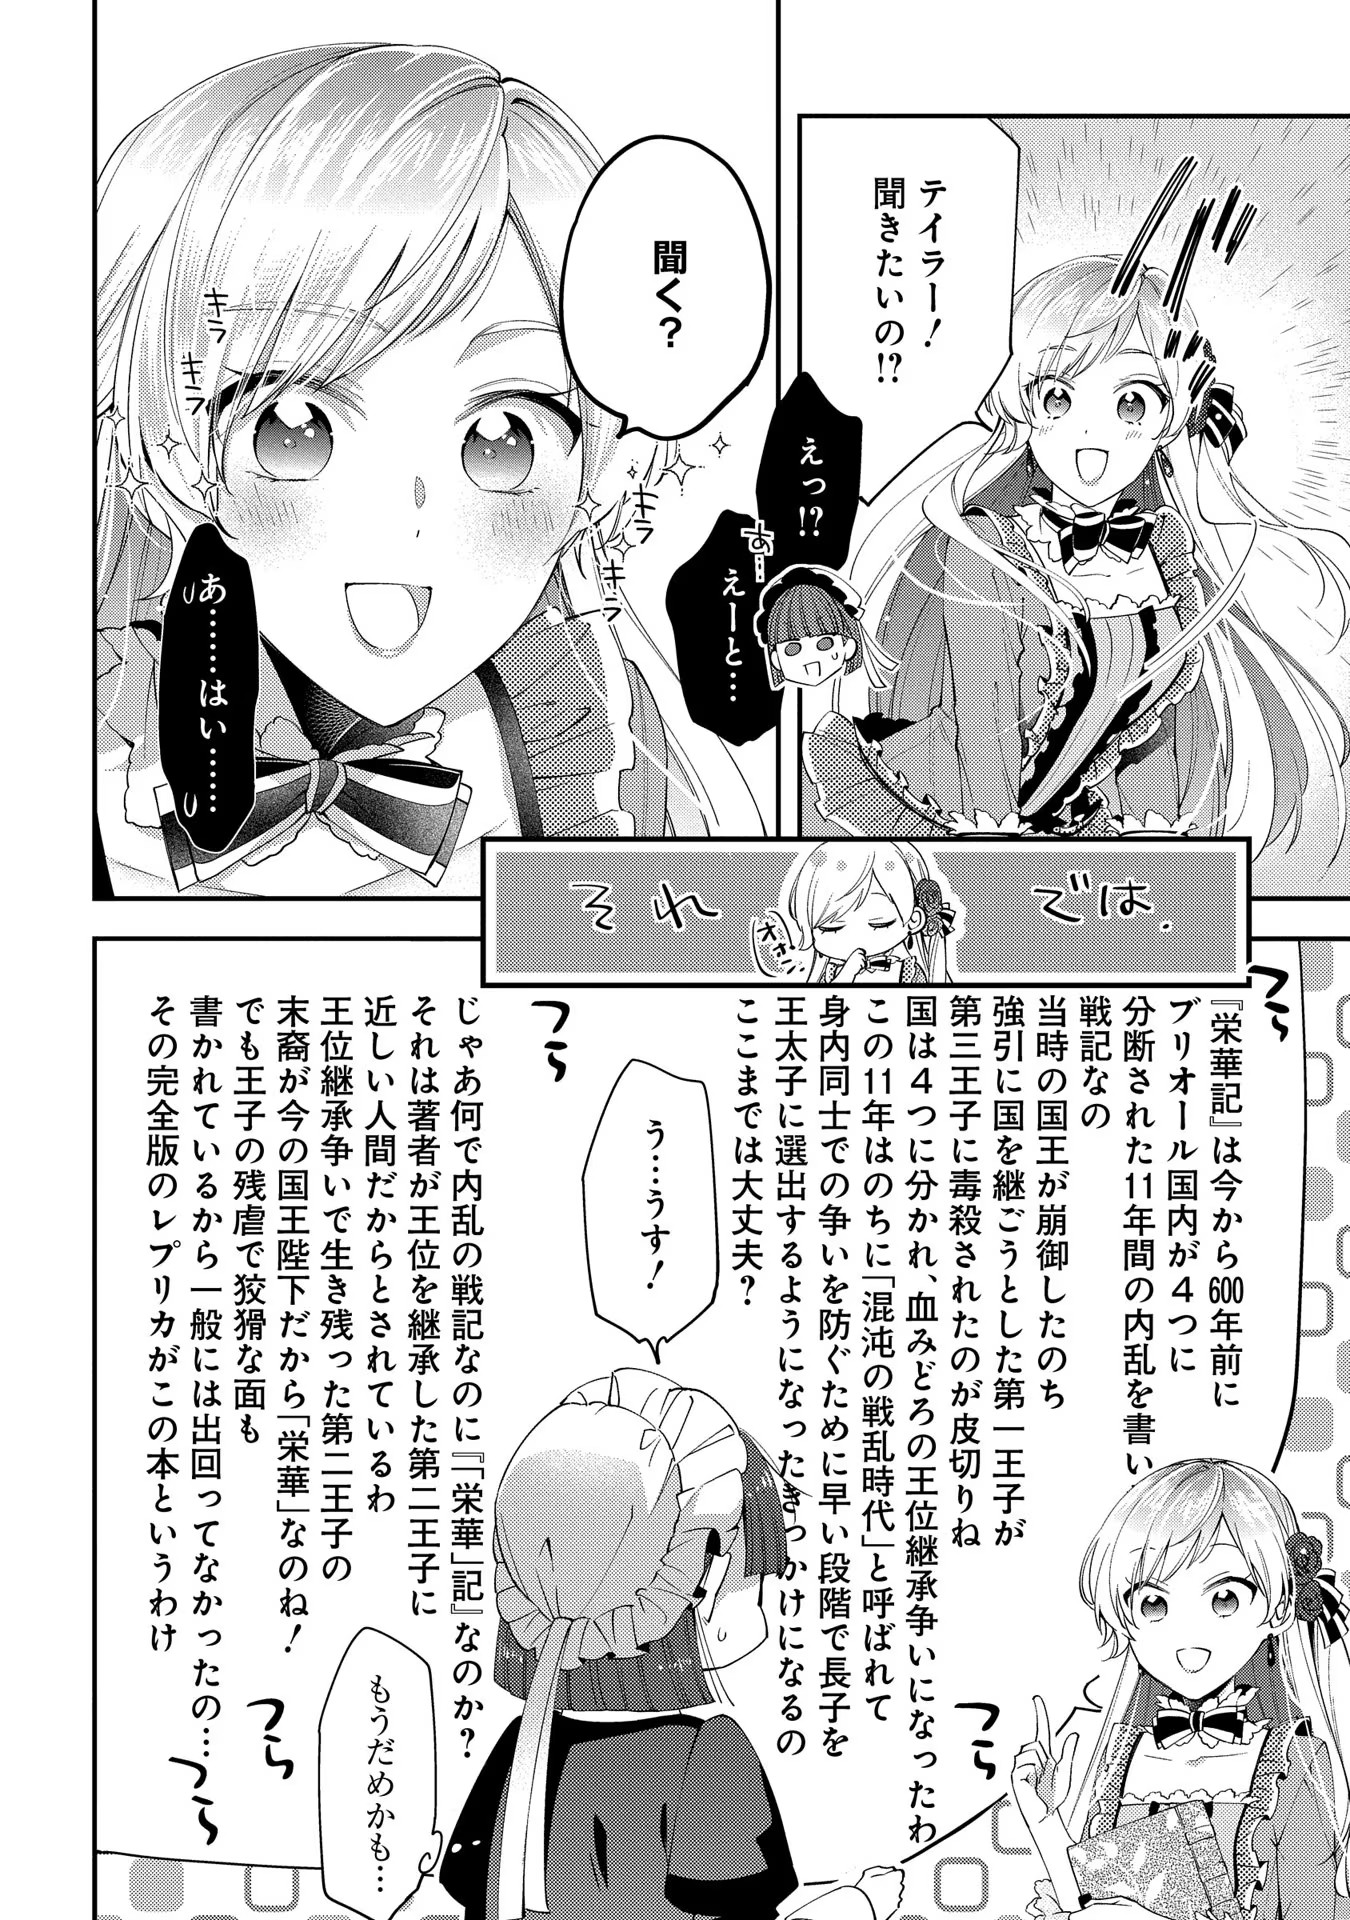 Outaishi ni Konyaku Hakisareta no de, Mou Baka no Furi wa Yameyou to Omoimasu - Chapter 5 - Page 12